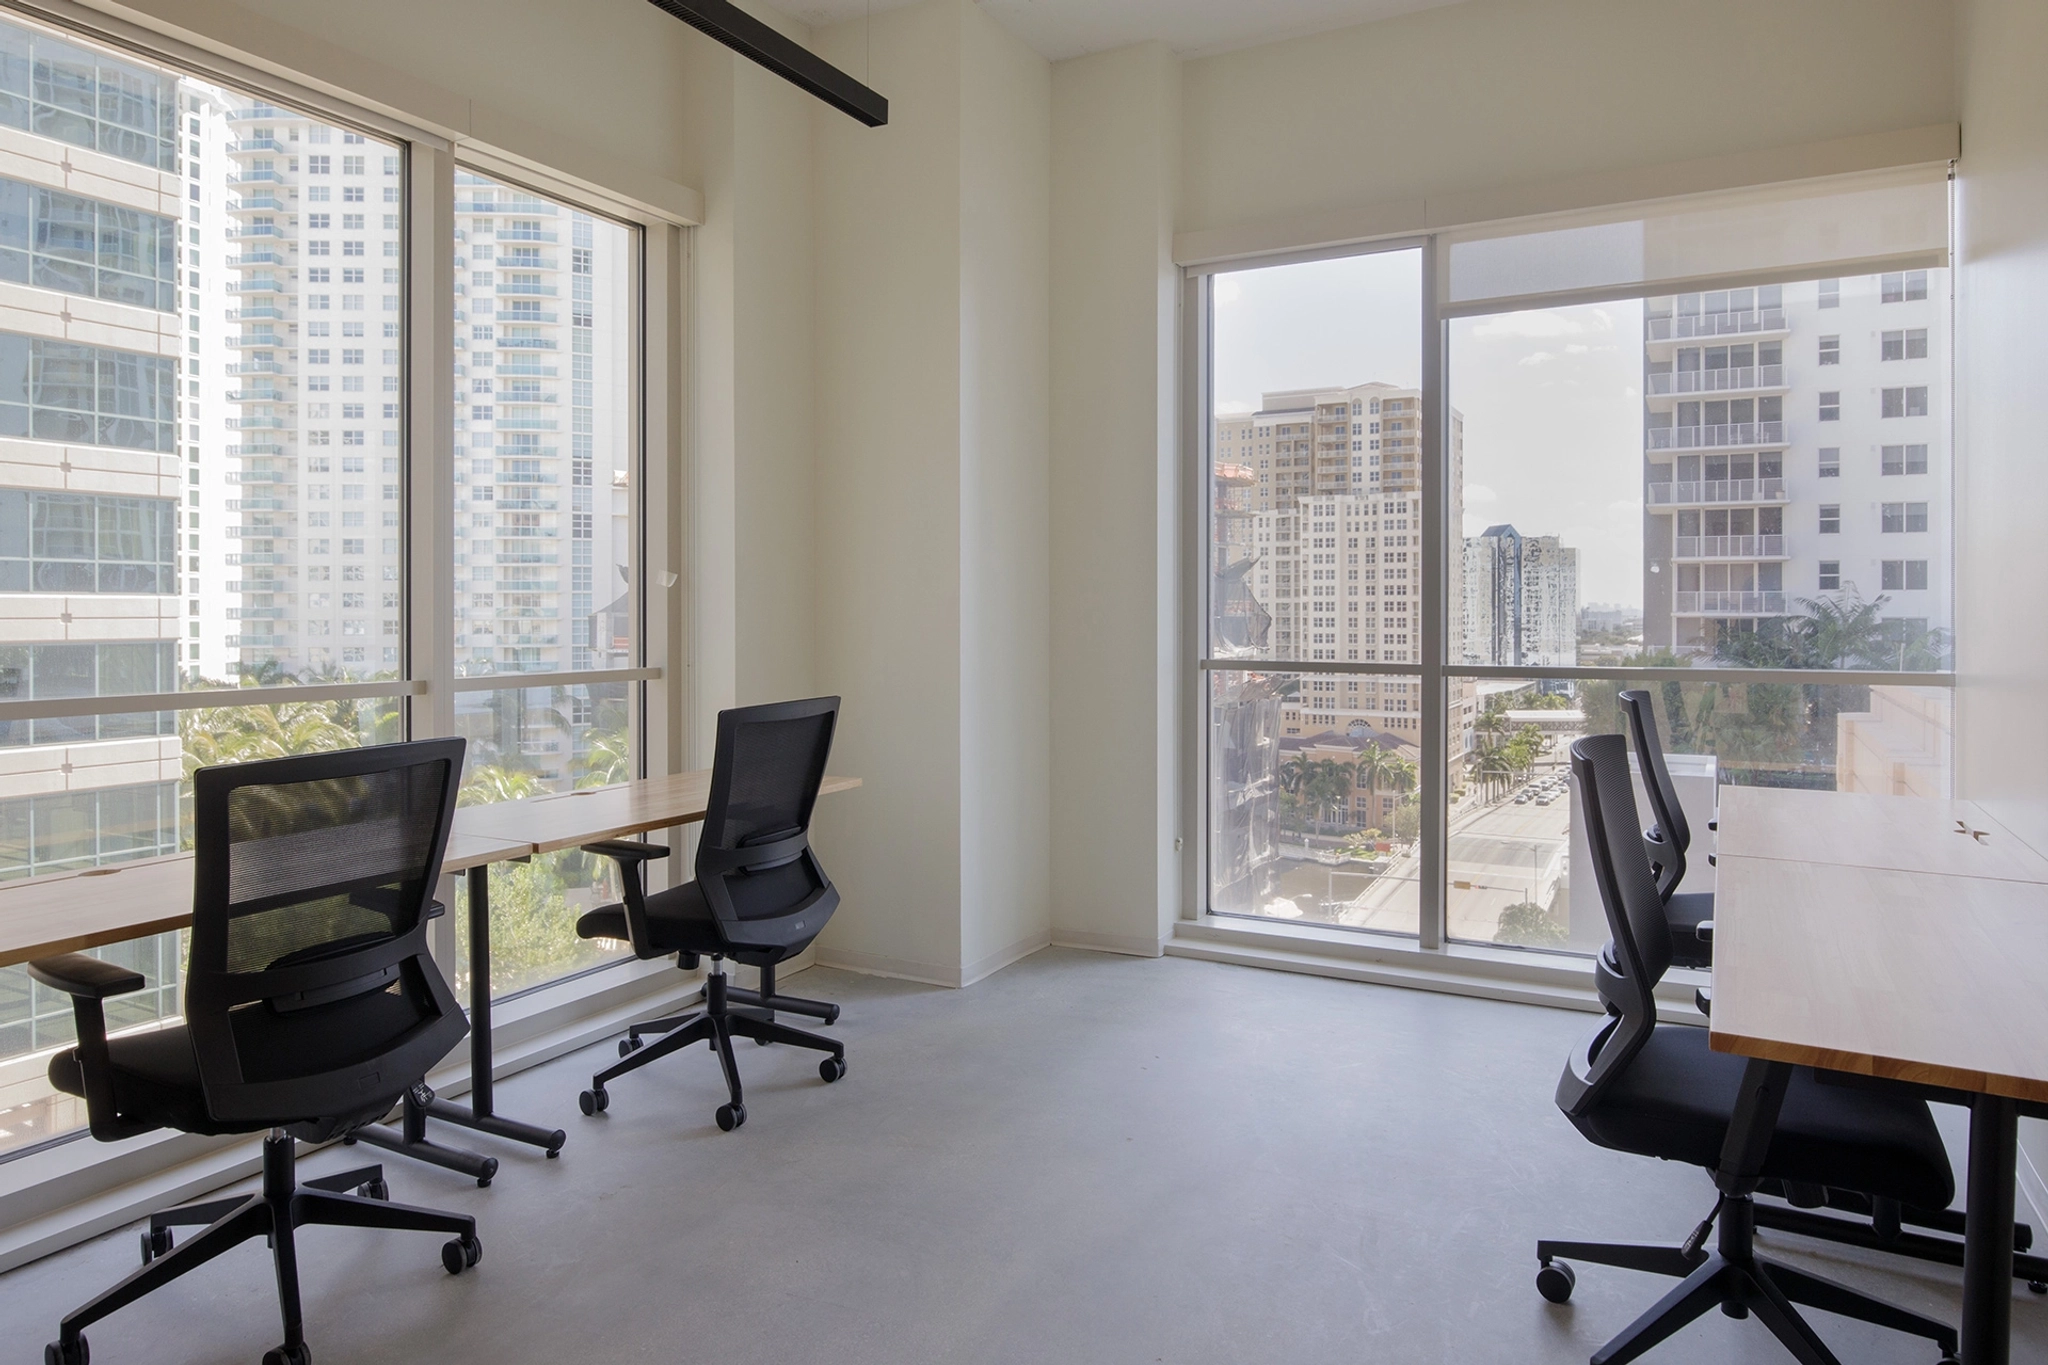 Un espace de travail moderne avec plusieurs bureaux vides et des chaises ergonomiques, doté de grandes fenêtres offrant une vue sur les immeubles de grande hauteur et le paysage urbain de Fort Lauderdale.